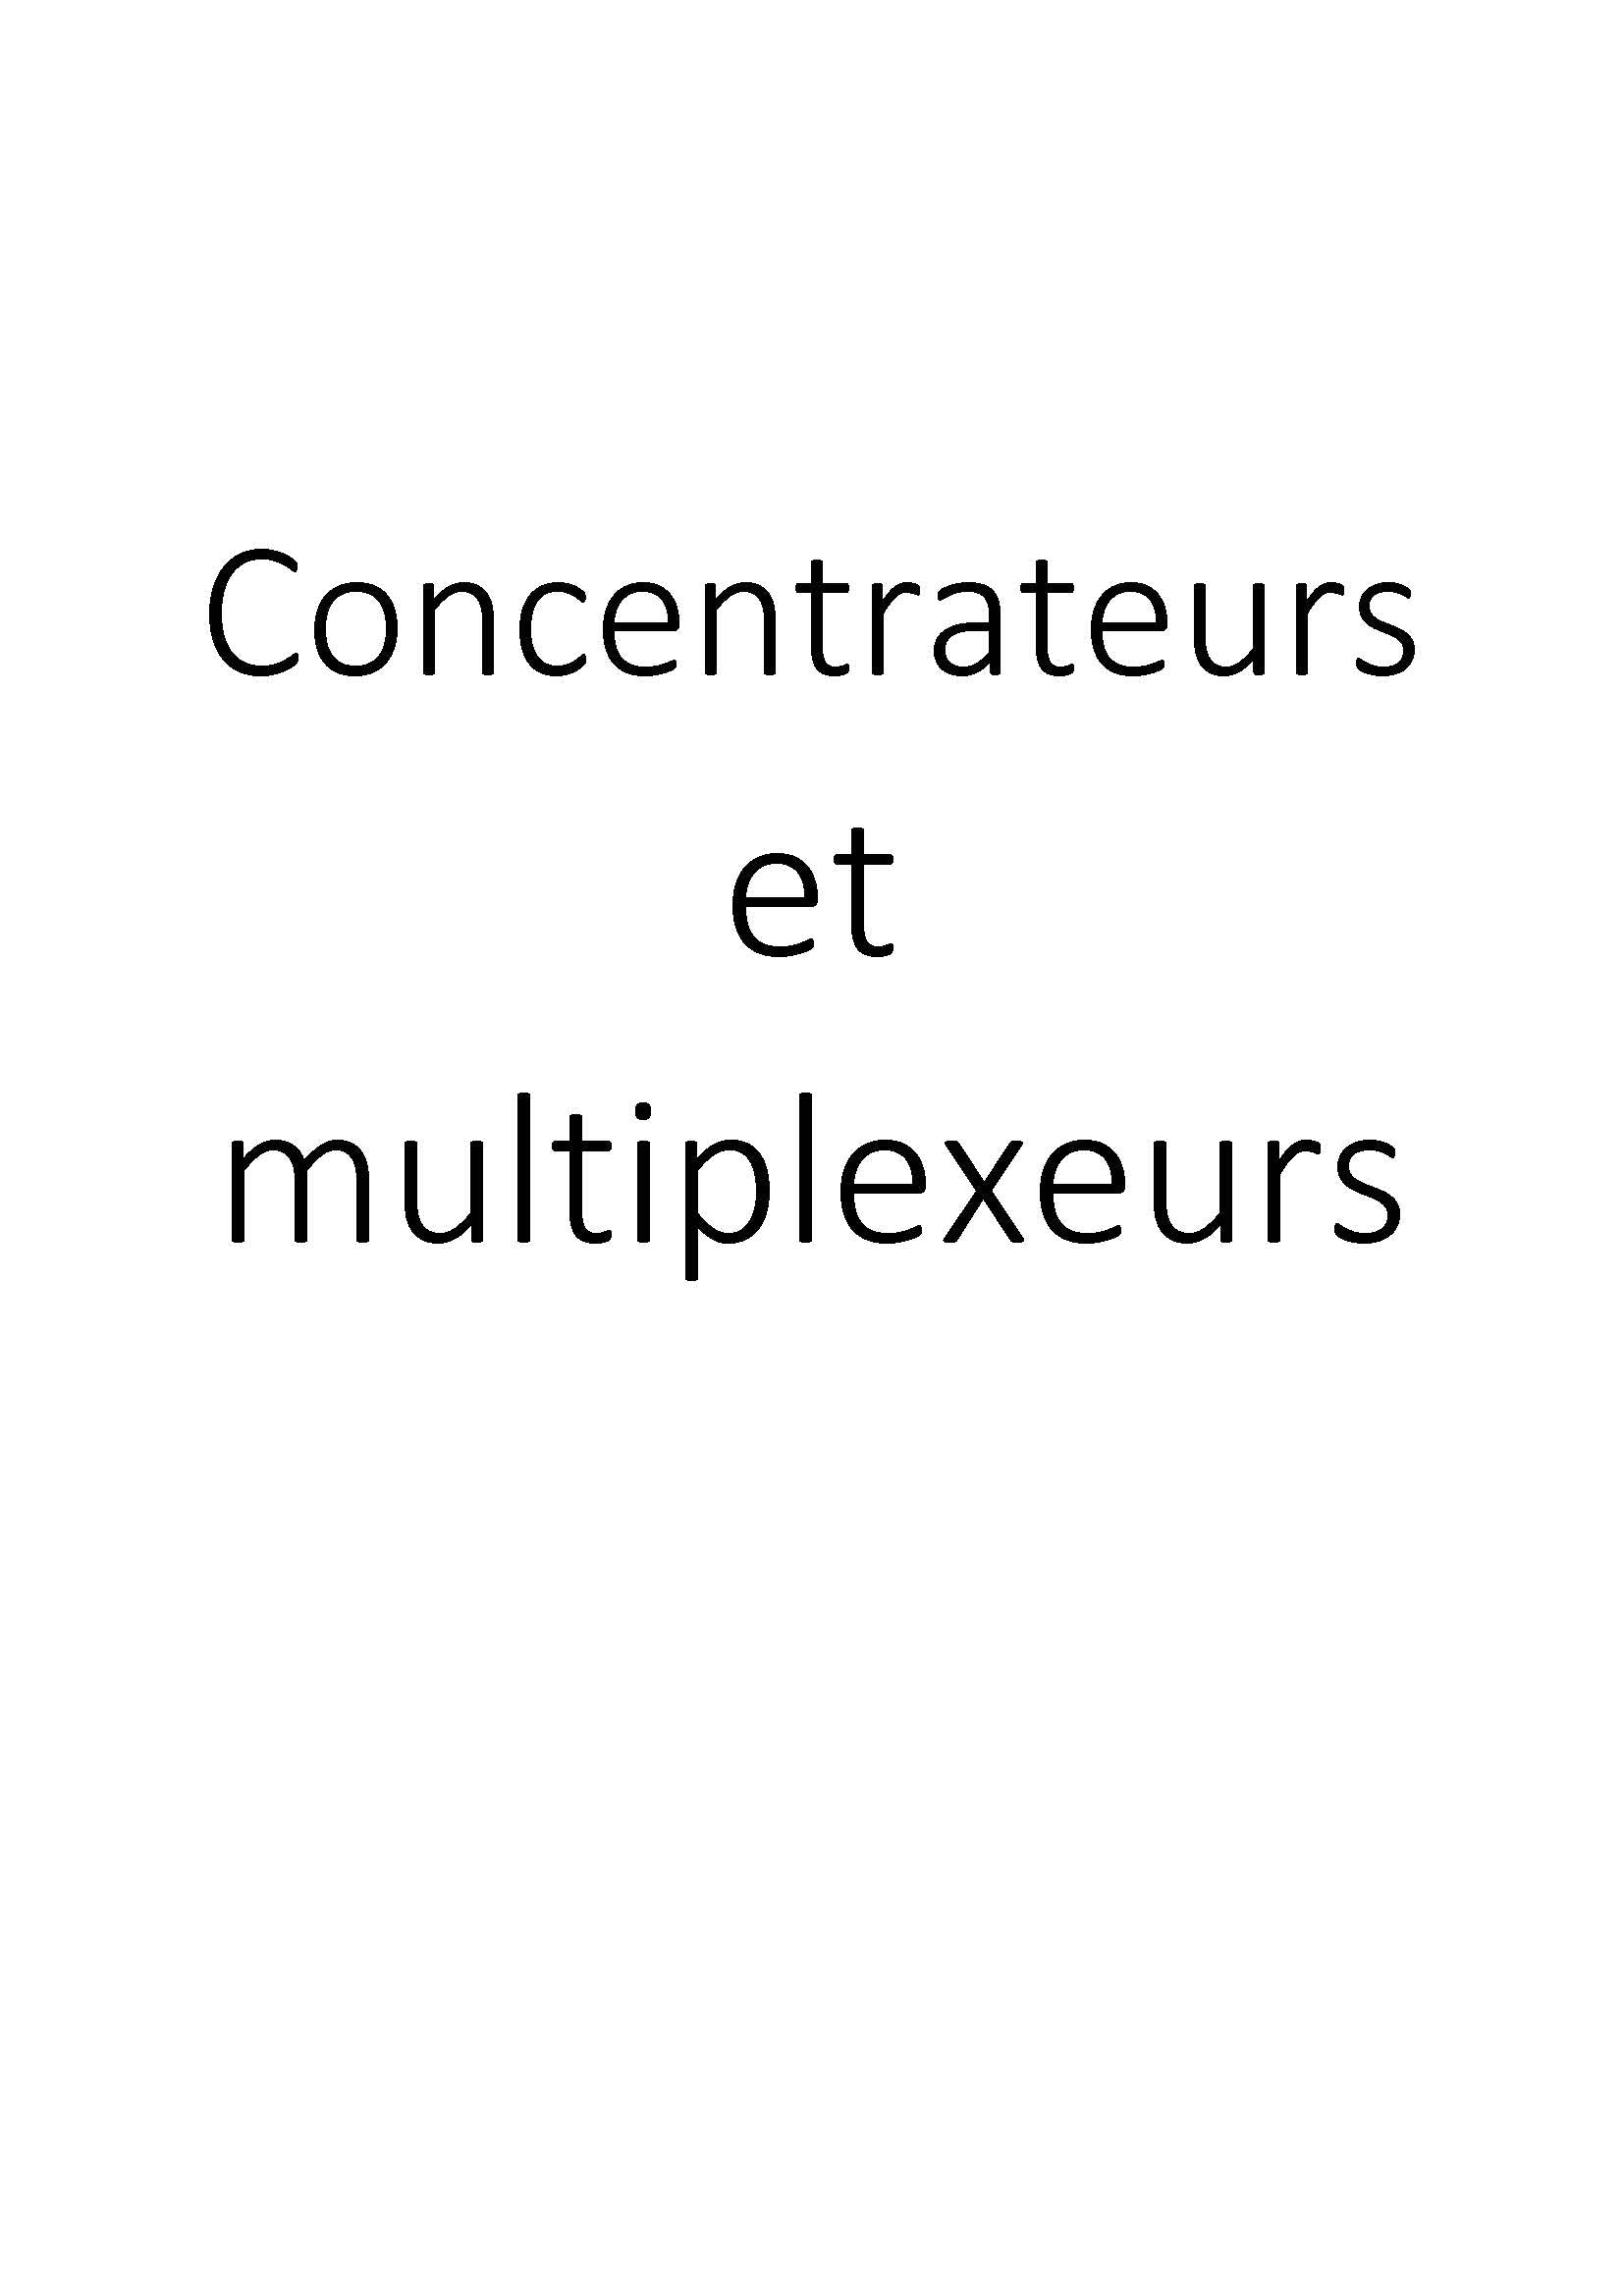 Concentrateurs et multiplexeurs clicktofournisseur.com